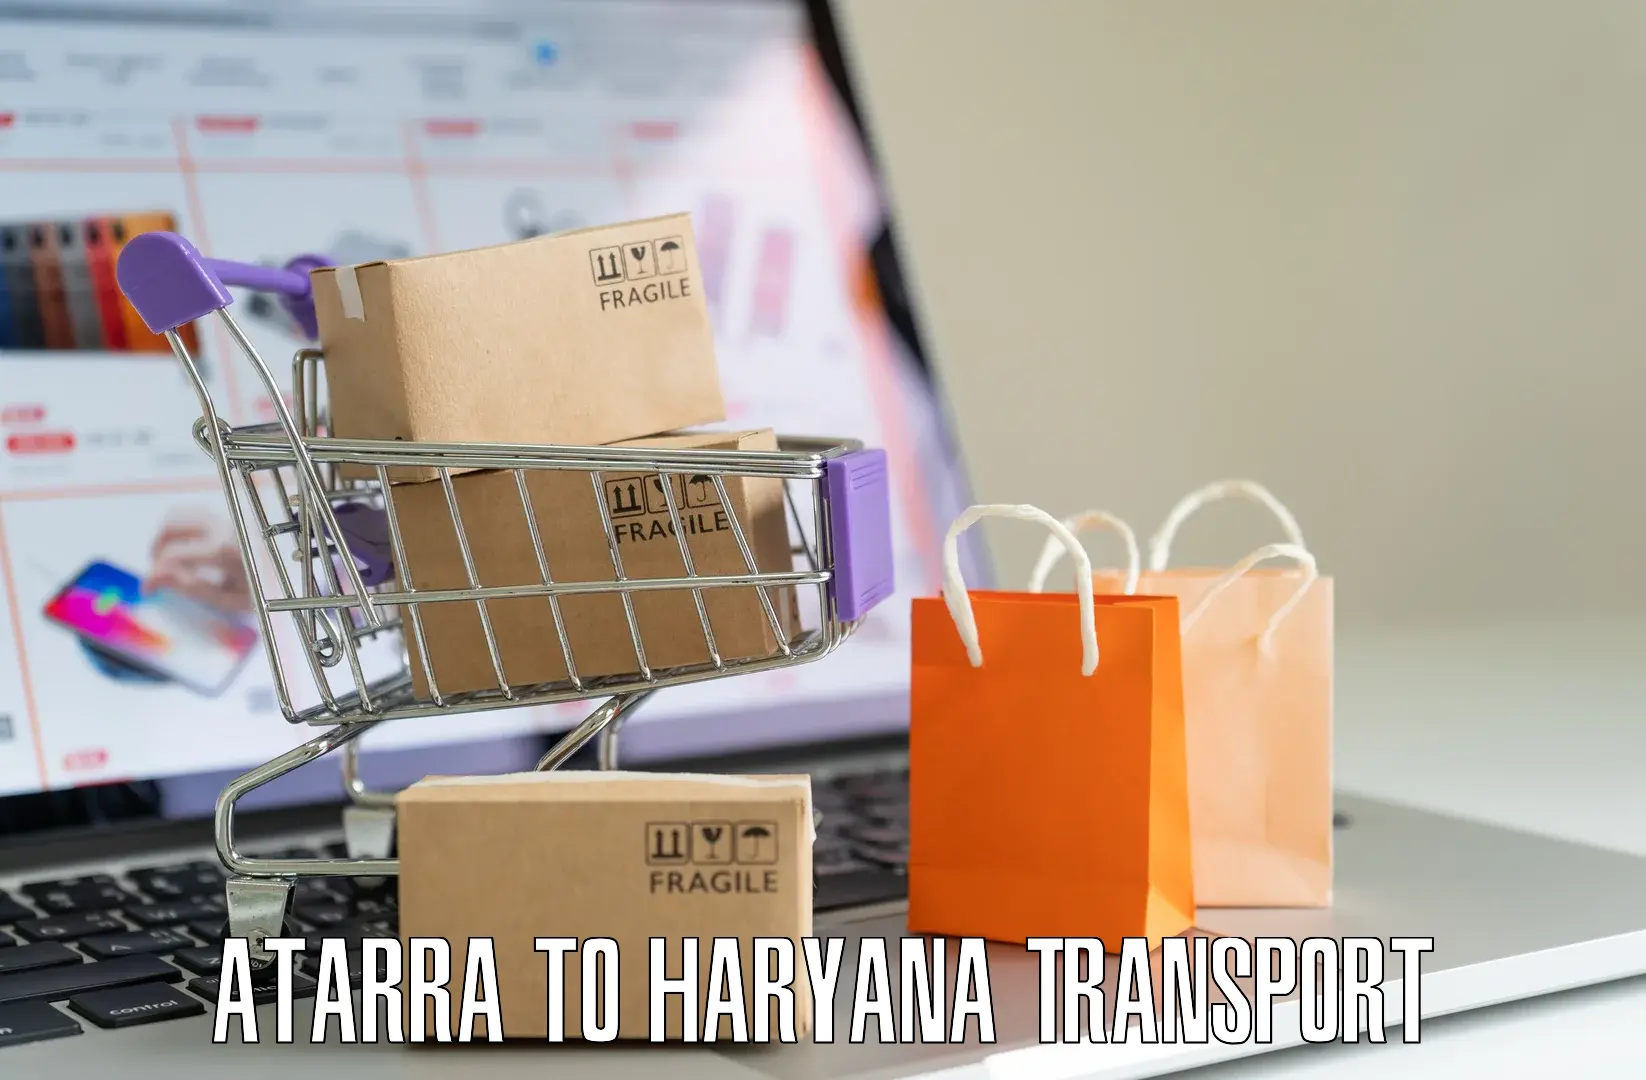 Intercity transport Atarra to Narwana